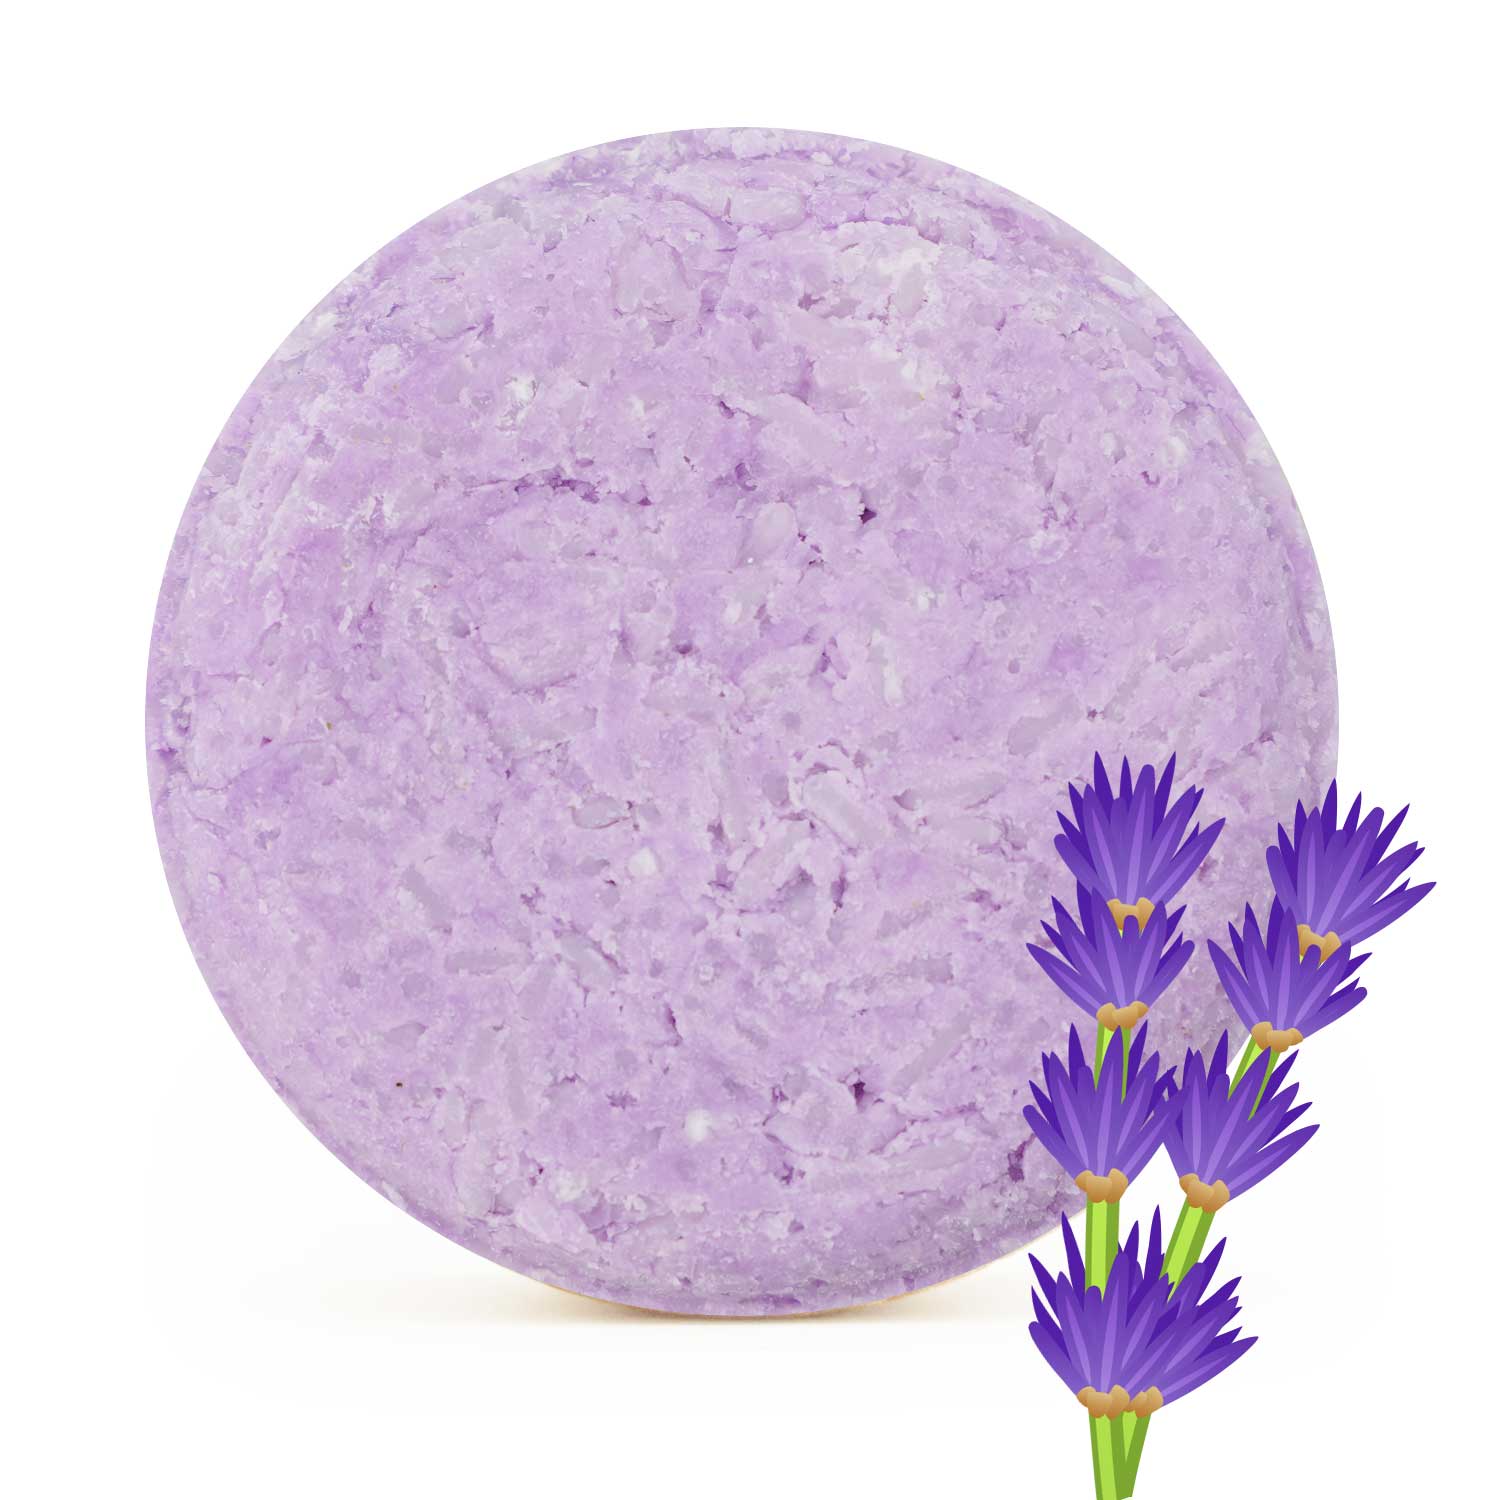 Cosmeau Shampoo Bar Lavender 65g